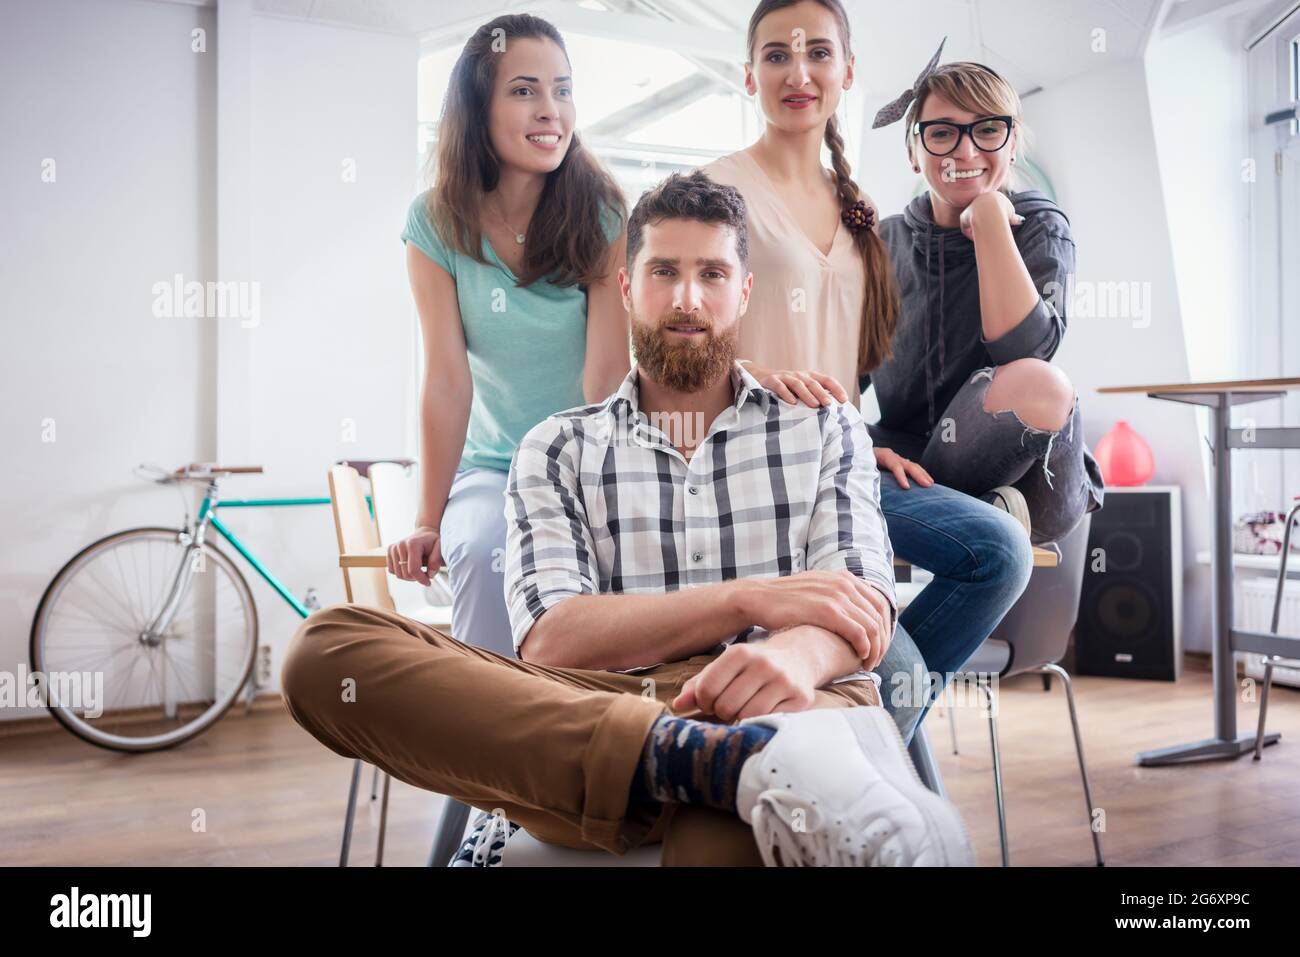 Porträt der vier Mitarbeiter lächelnd und mit Blick auf die Kamera, beim Tragen cool legere Kleidung während der Arbeit in der Shared Office Space eines modernen Hub fo Stockfoto